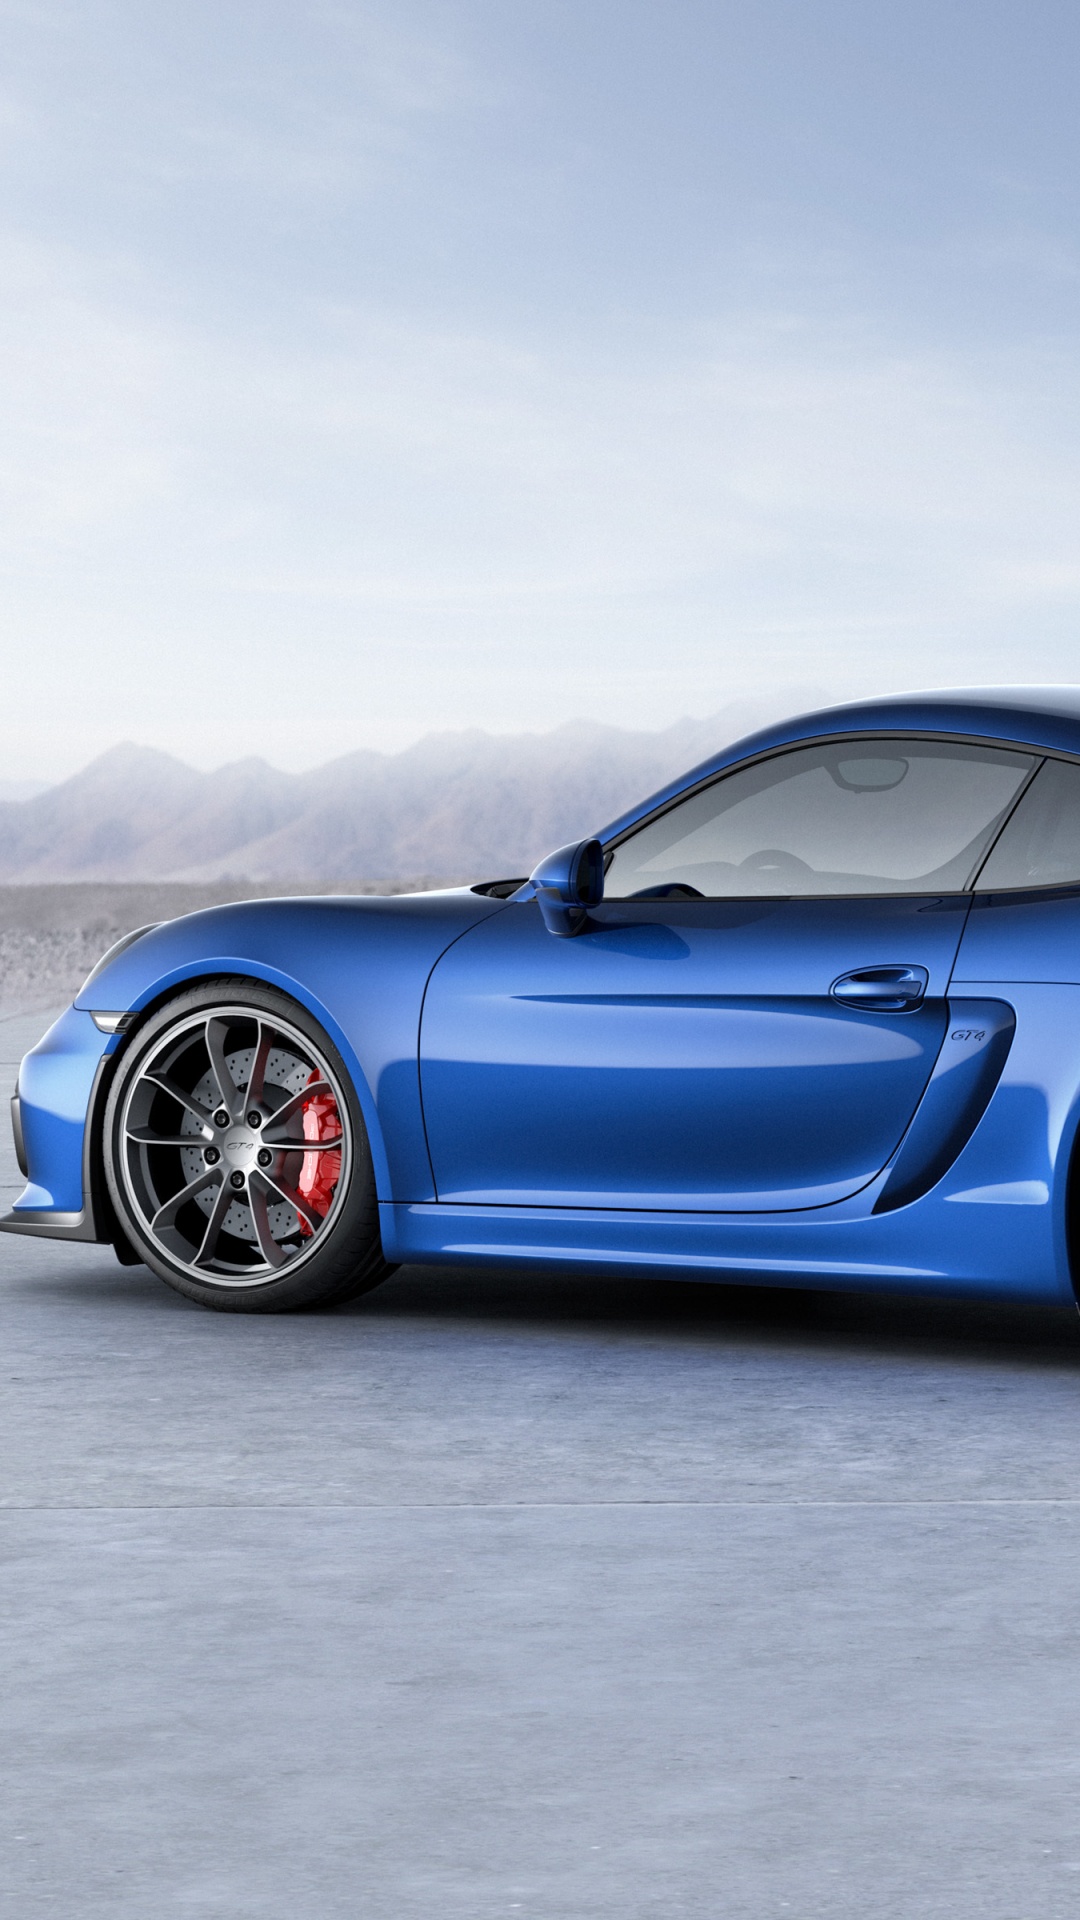 Blauer Porsche 911 Auf Grauem Betonpflaster. Wallpaper in 1080x1920 Resolution